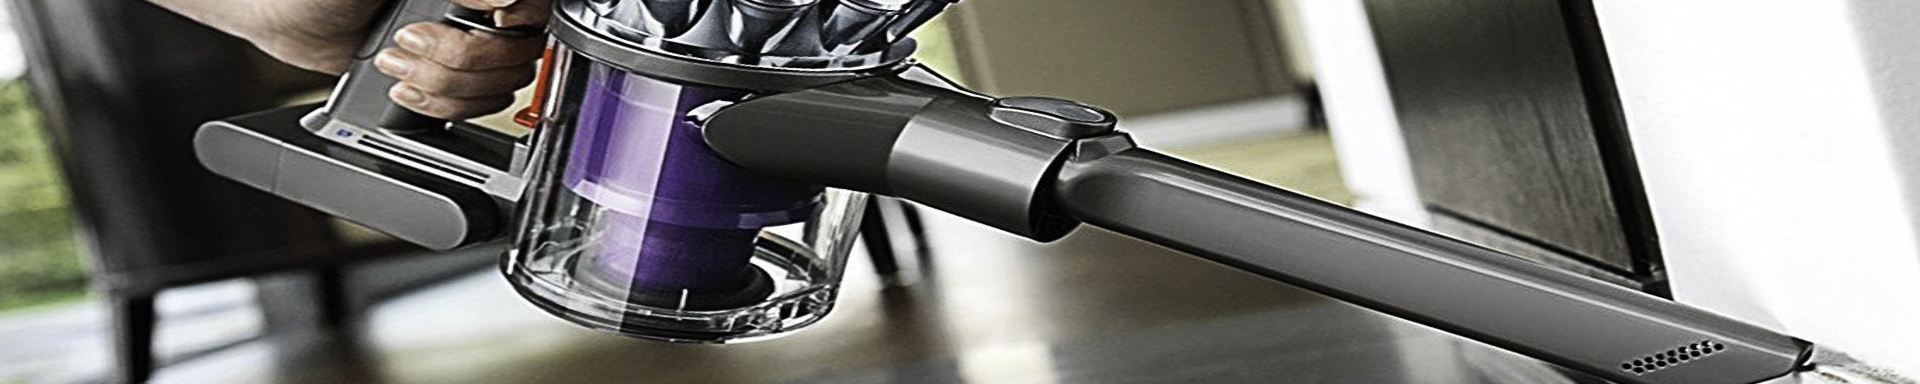 Handheld Vacuums | GarageAndFab.com | Munro Industries gf-100103050106